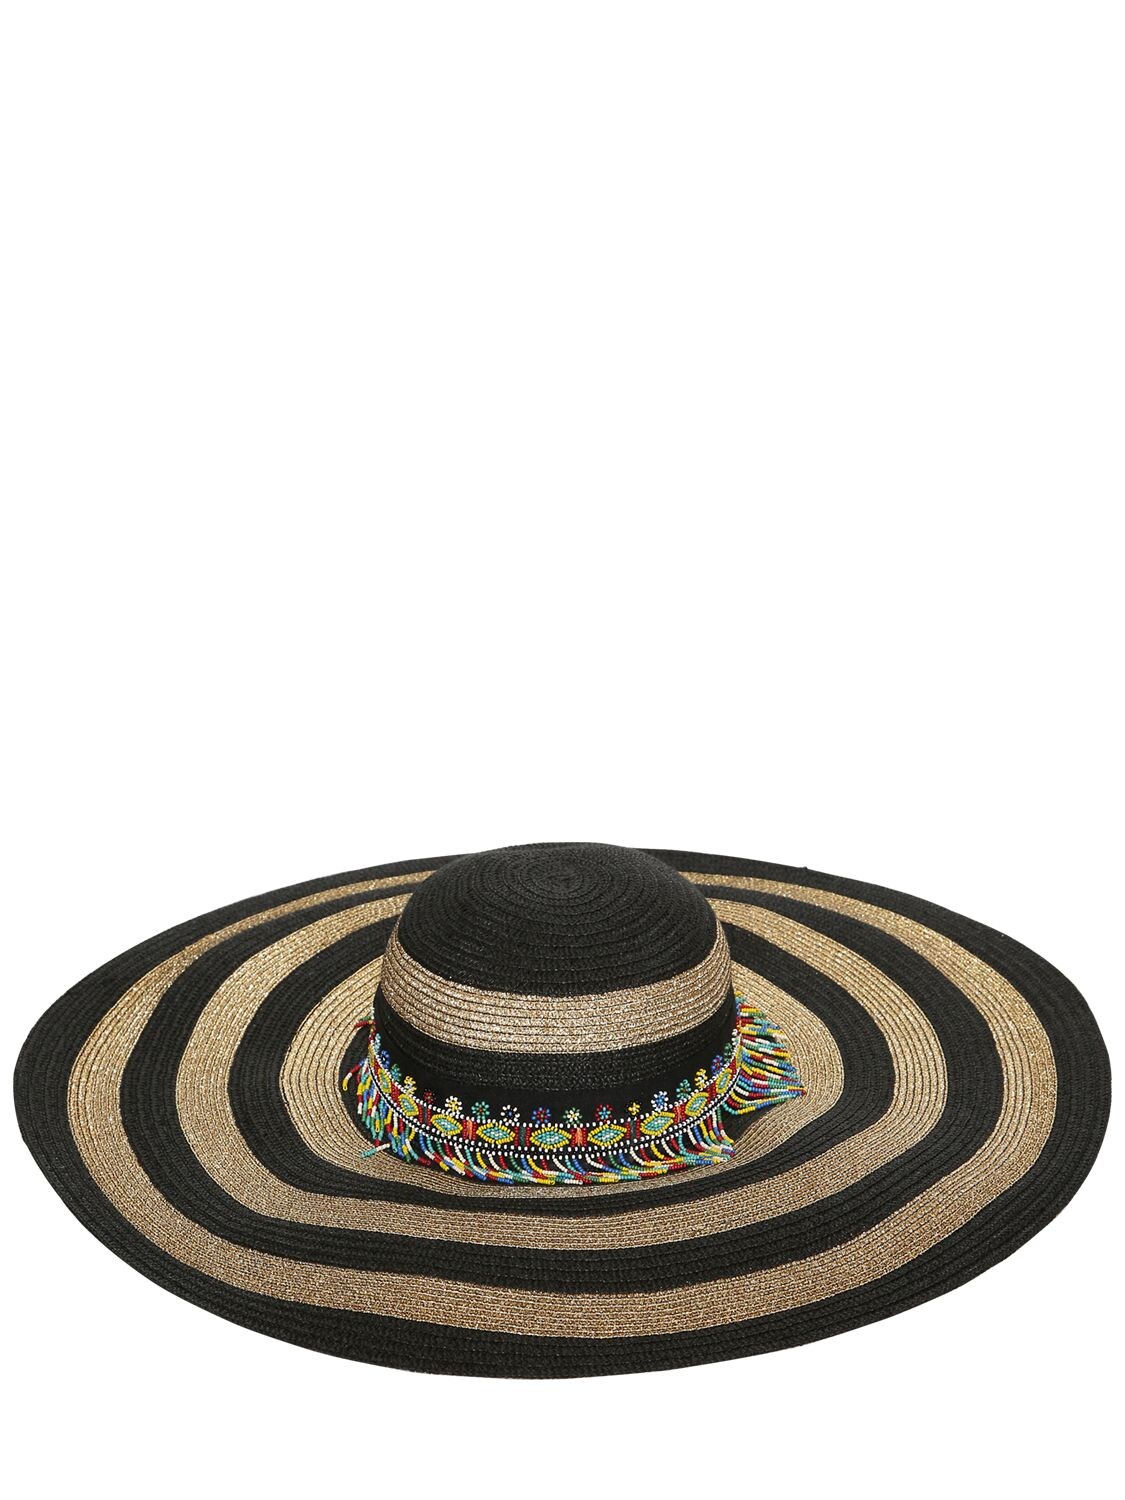 ETRO 珠饰条纹宽沿帽,69ID4O006-MDAWMQ2